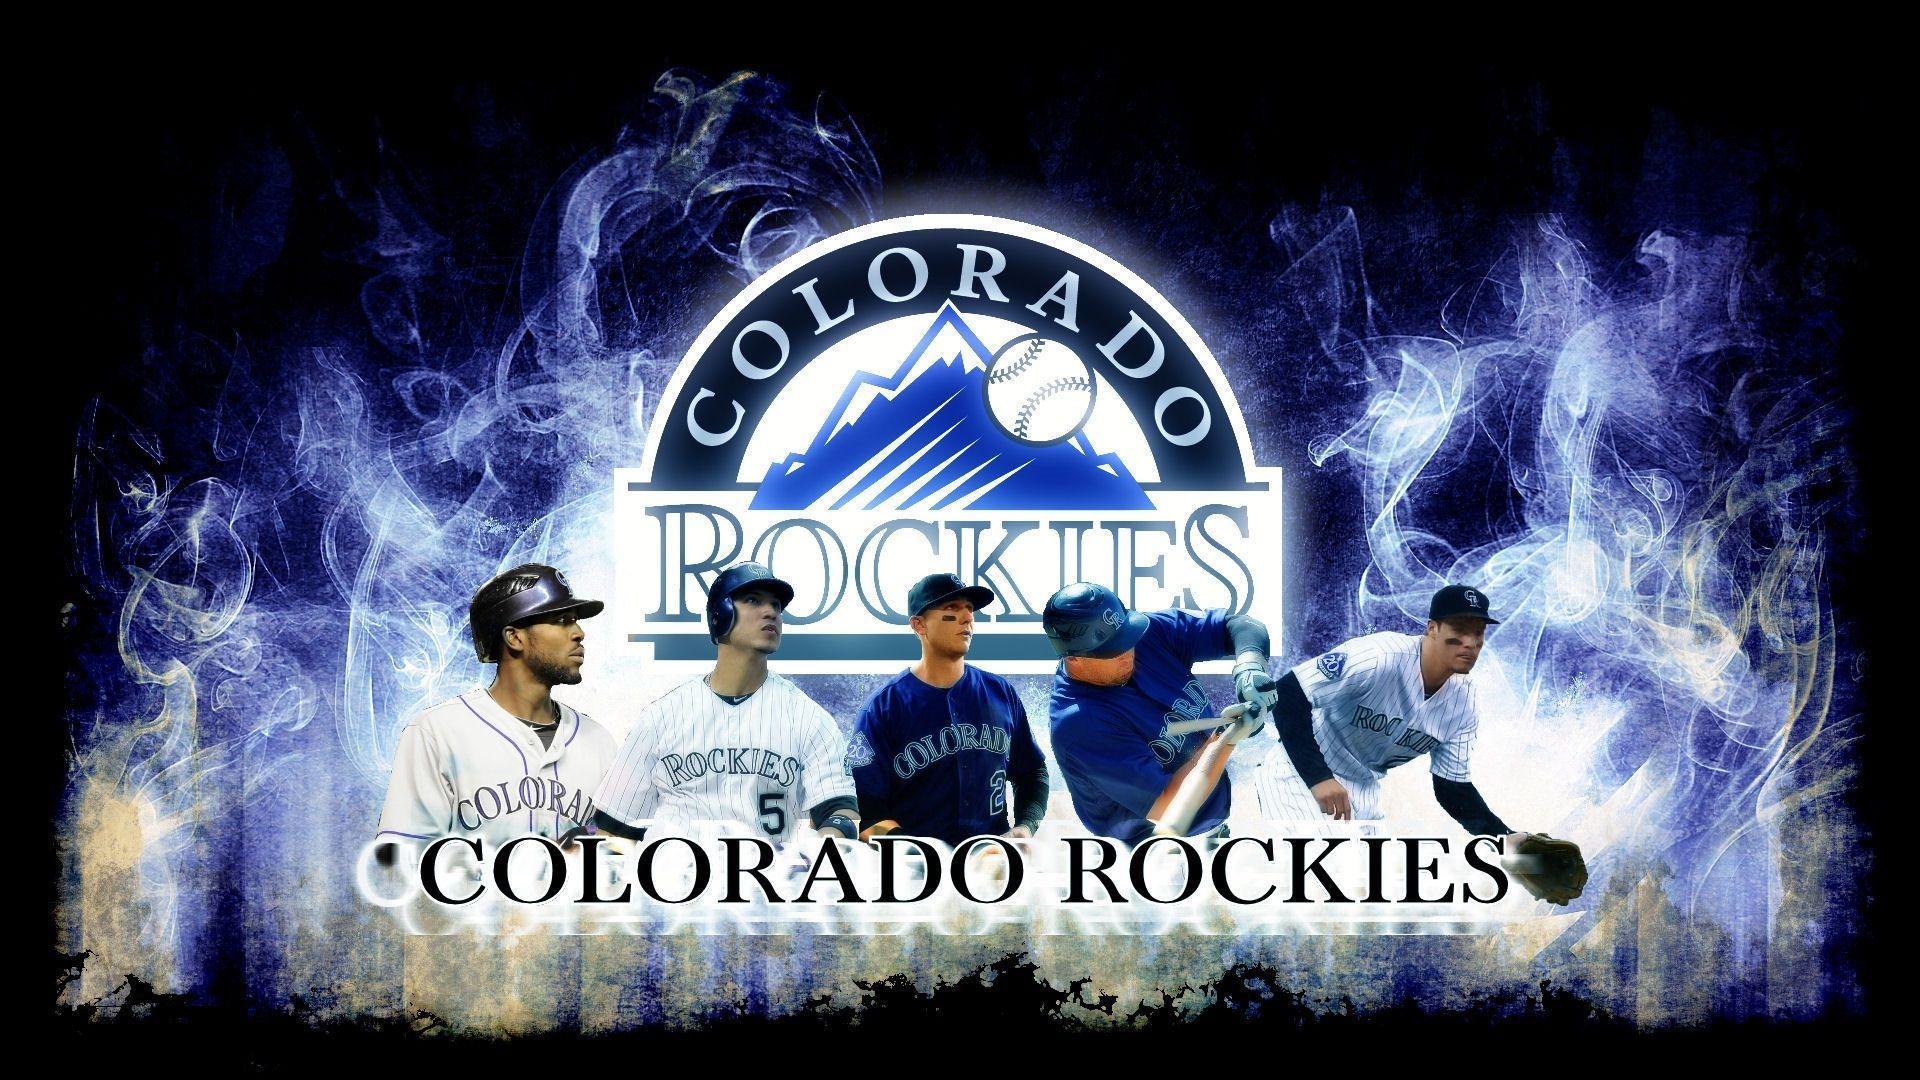 Colorado Rockies Wallpapers - Top Free Colorado Rockies